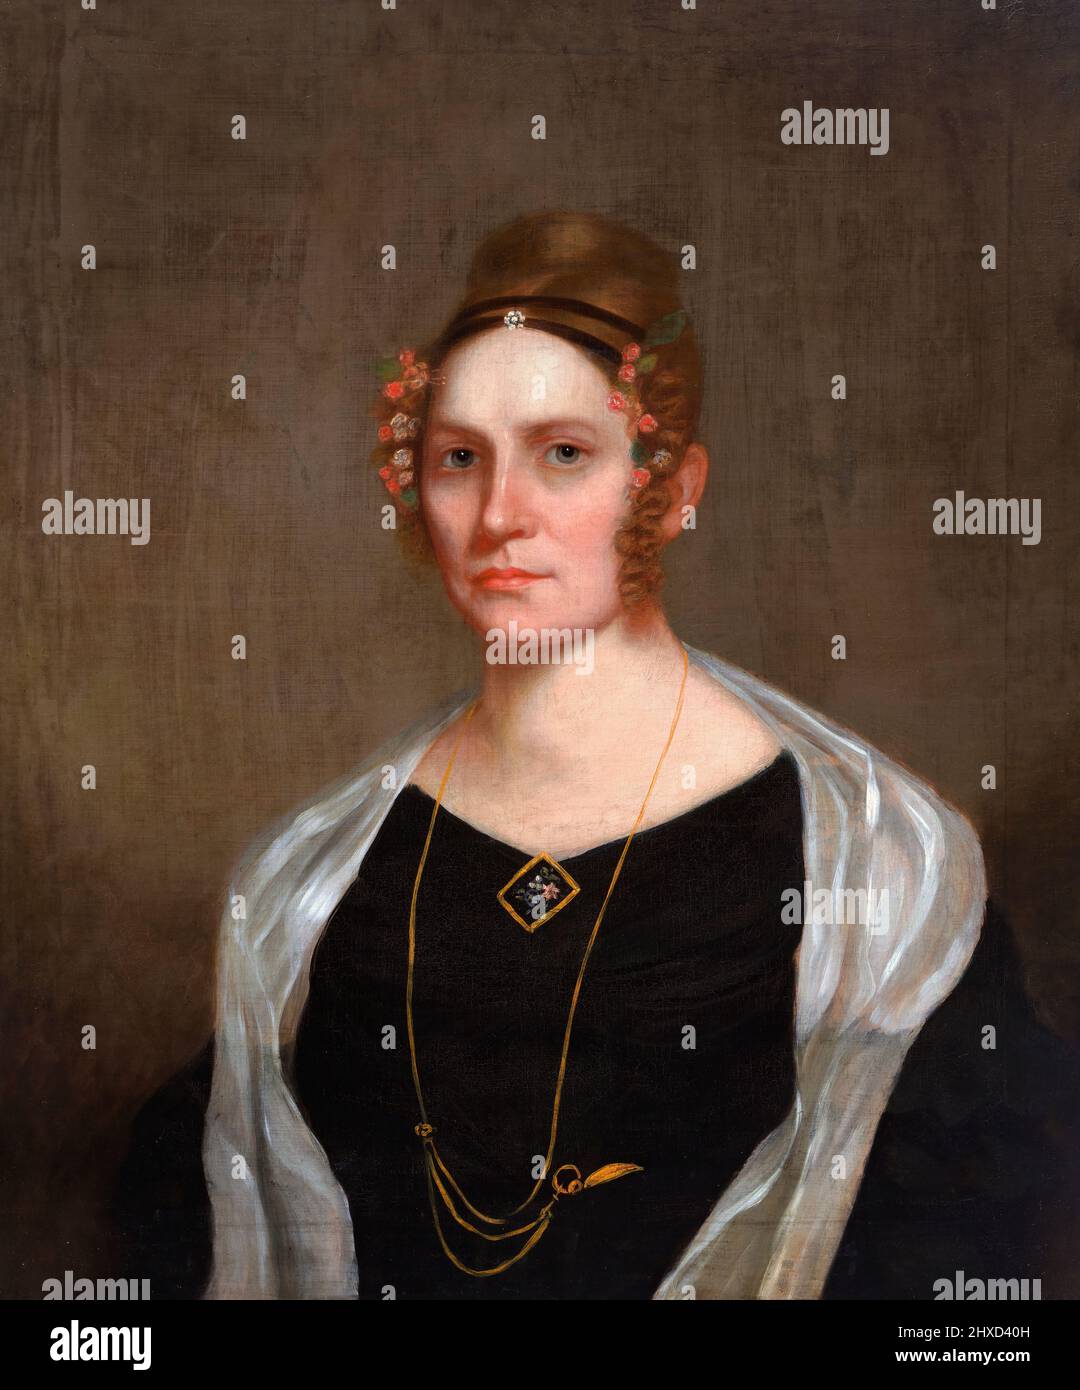 Porträt der ehemaligen First Lady und Ehefrau von Millard Fillmore, Abigail Fillmore (geb. powers; 1798-1853), Öl auf Leinwand, c. 1840 Stockfoto